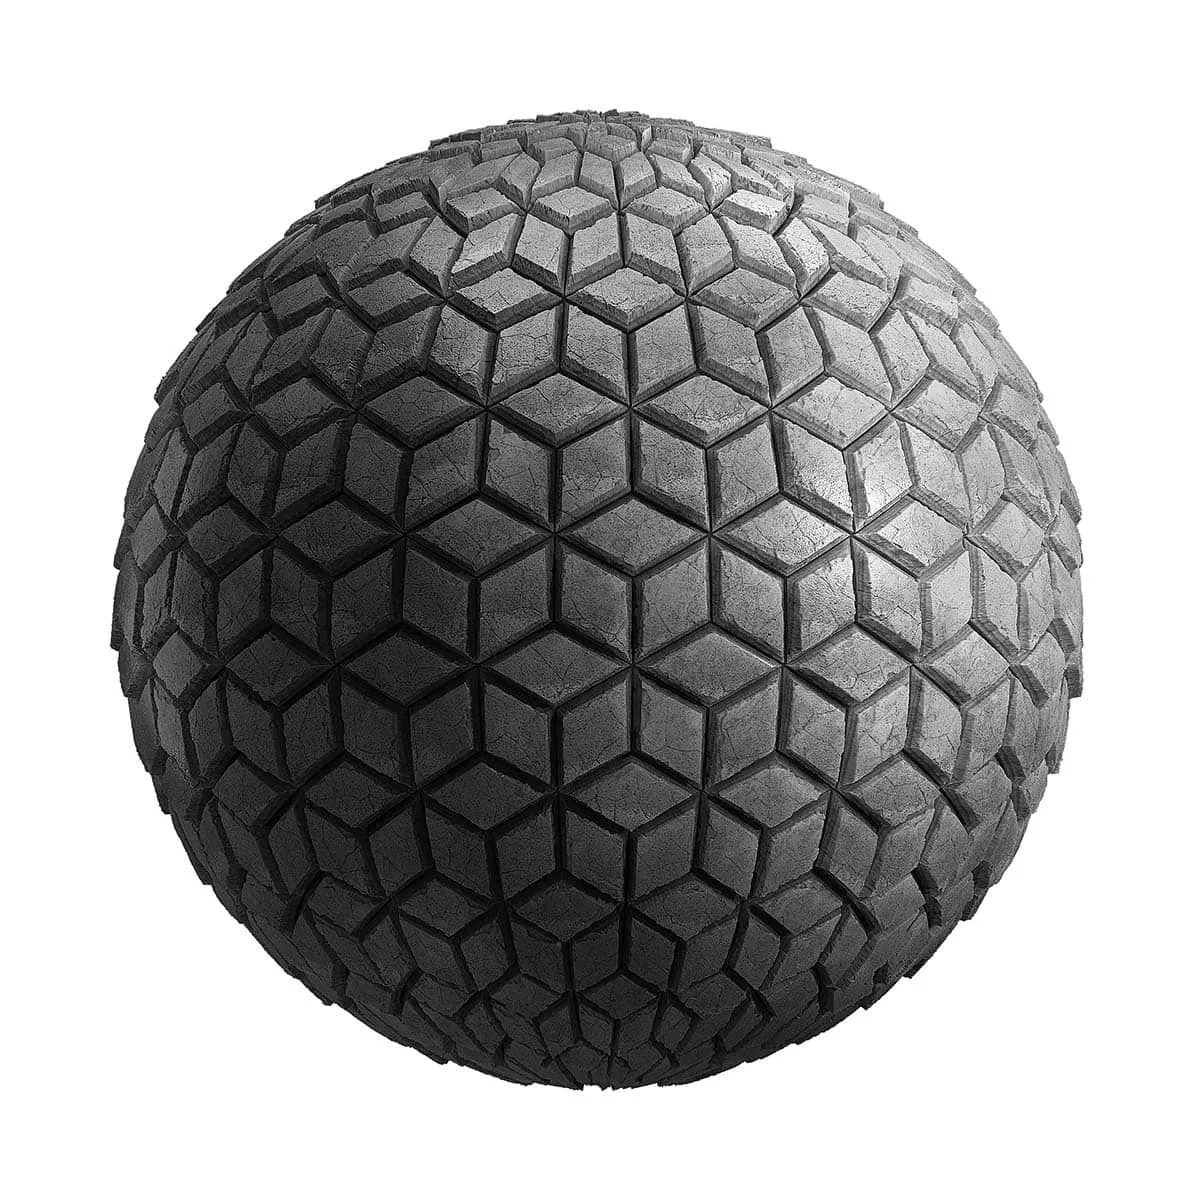 PBR Textures Volume 21 – Walls – 4K – 8K – cube_shaped_concrete_tiles_21_47